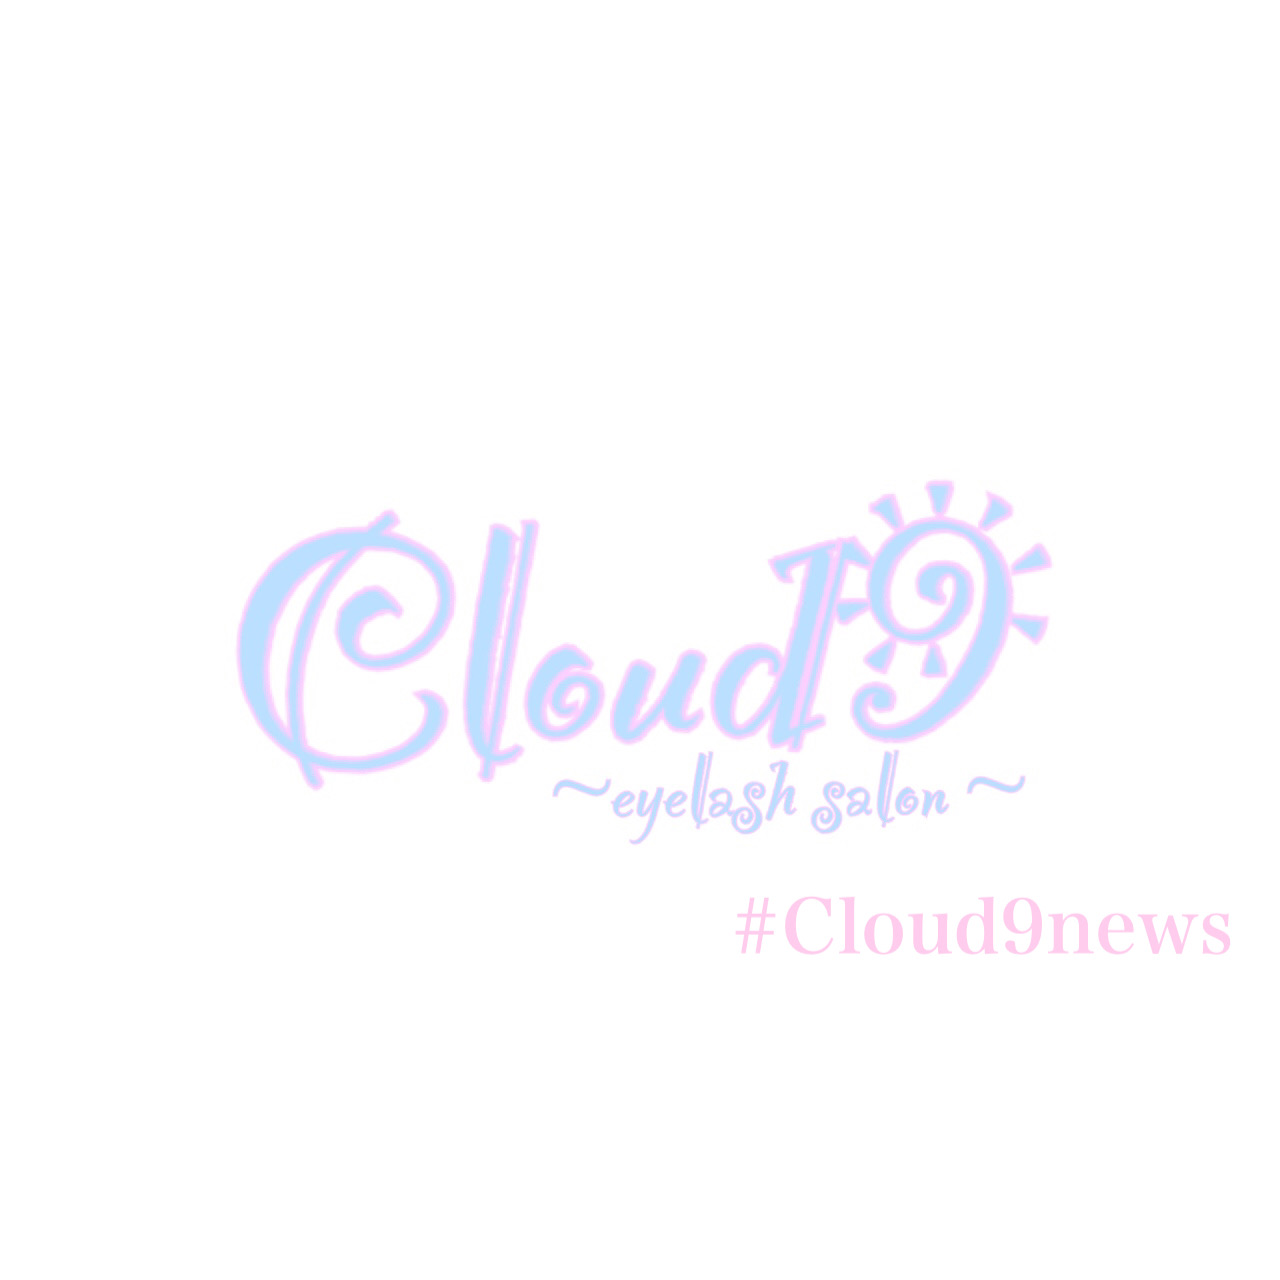 Cloud9news